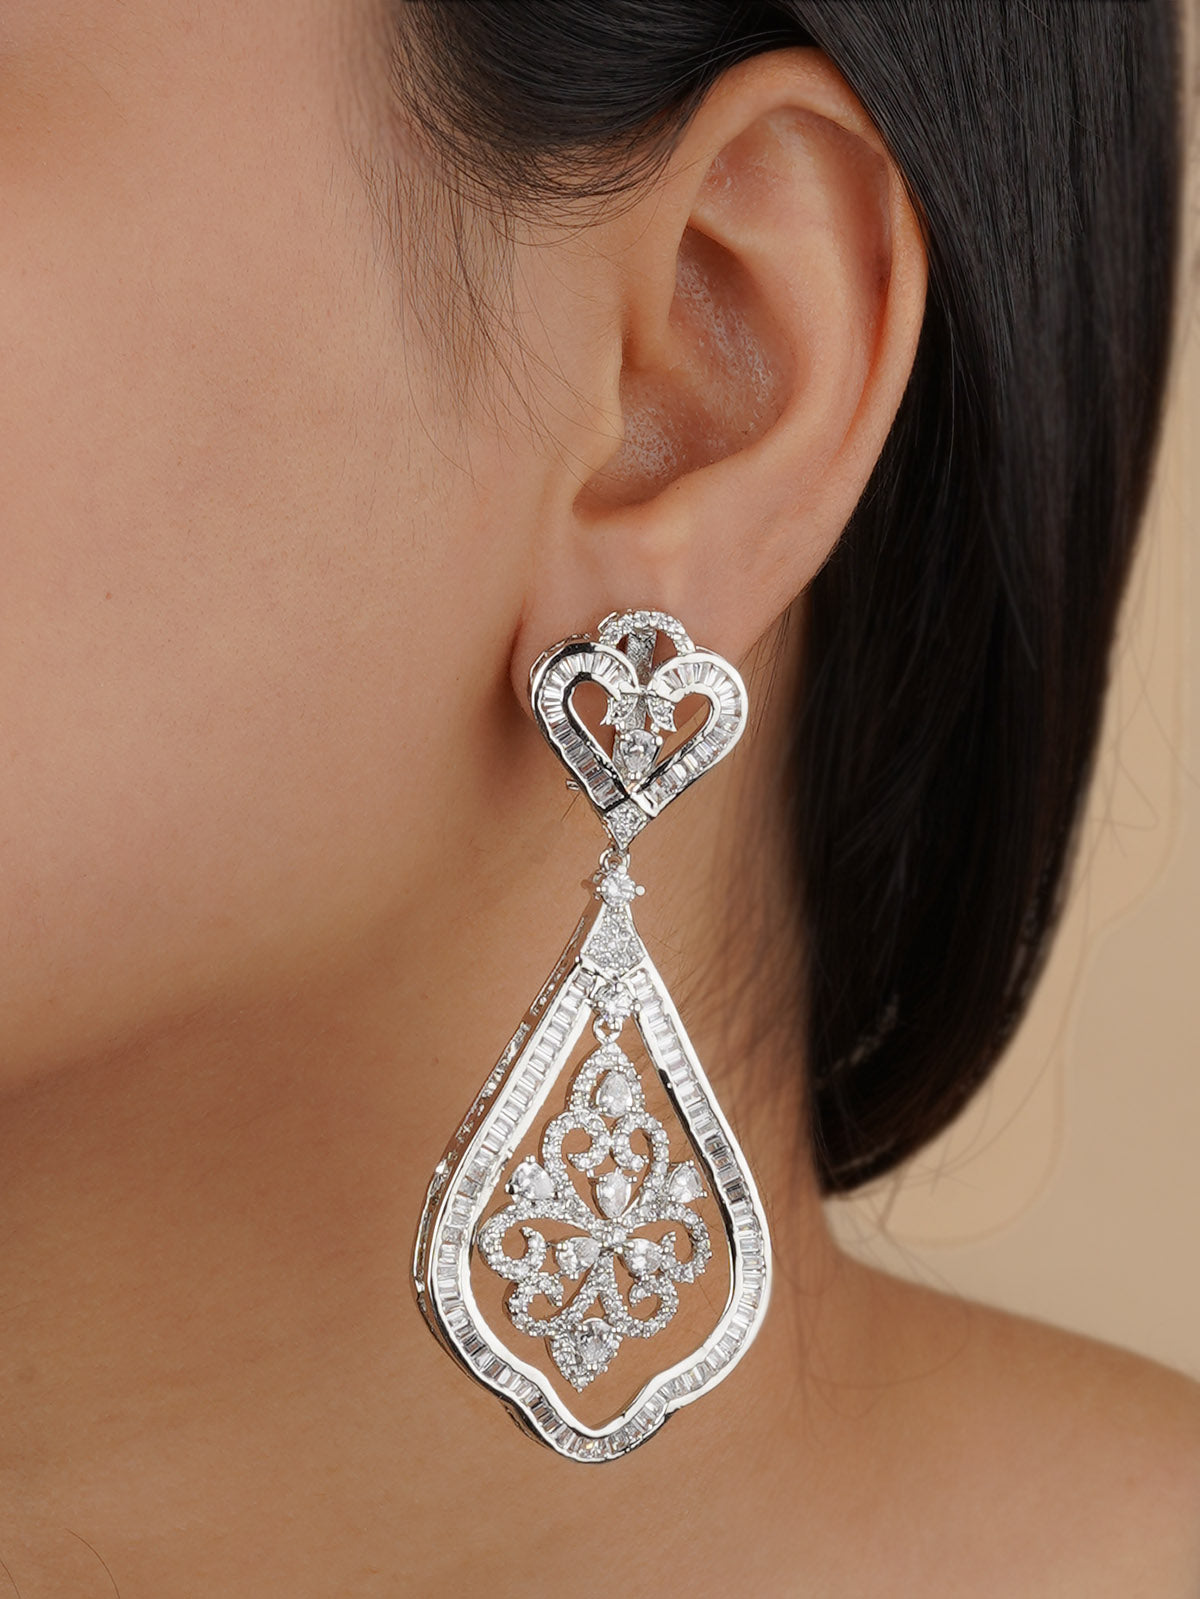 CZEAR516 - Silver Plated Faux Diamond Earrings